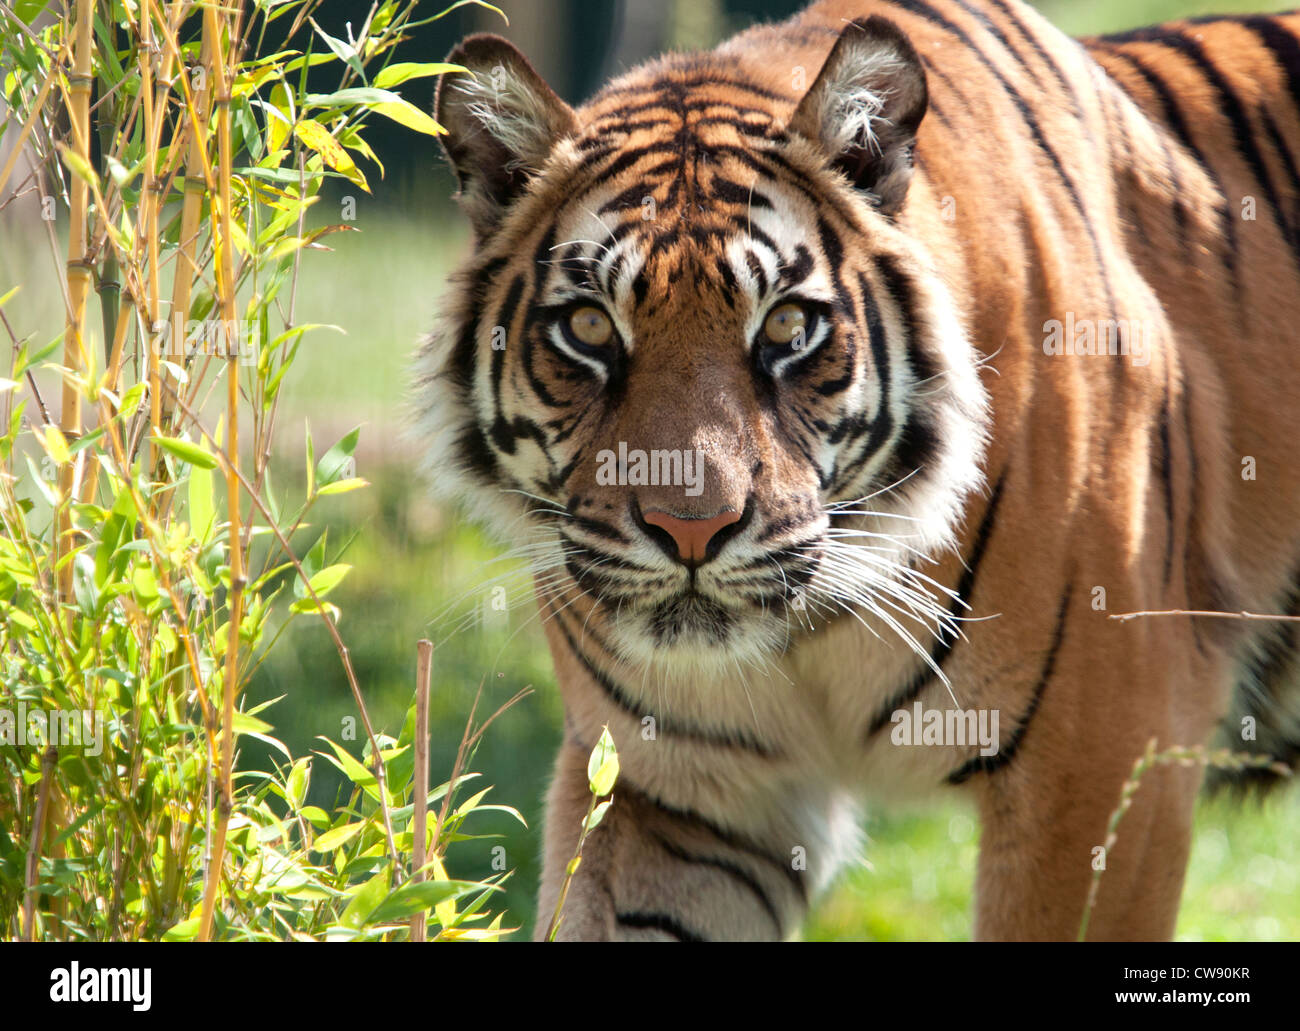 Sumatran tiger looking at camera Stock Photo - Alamy